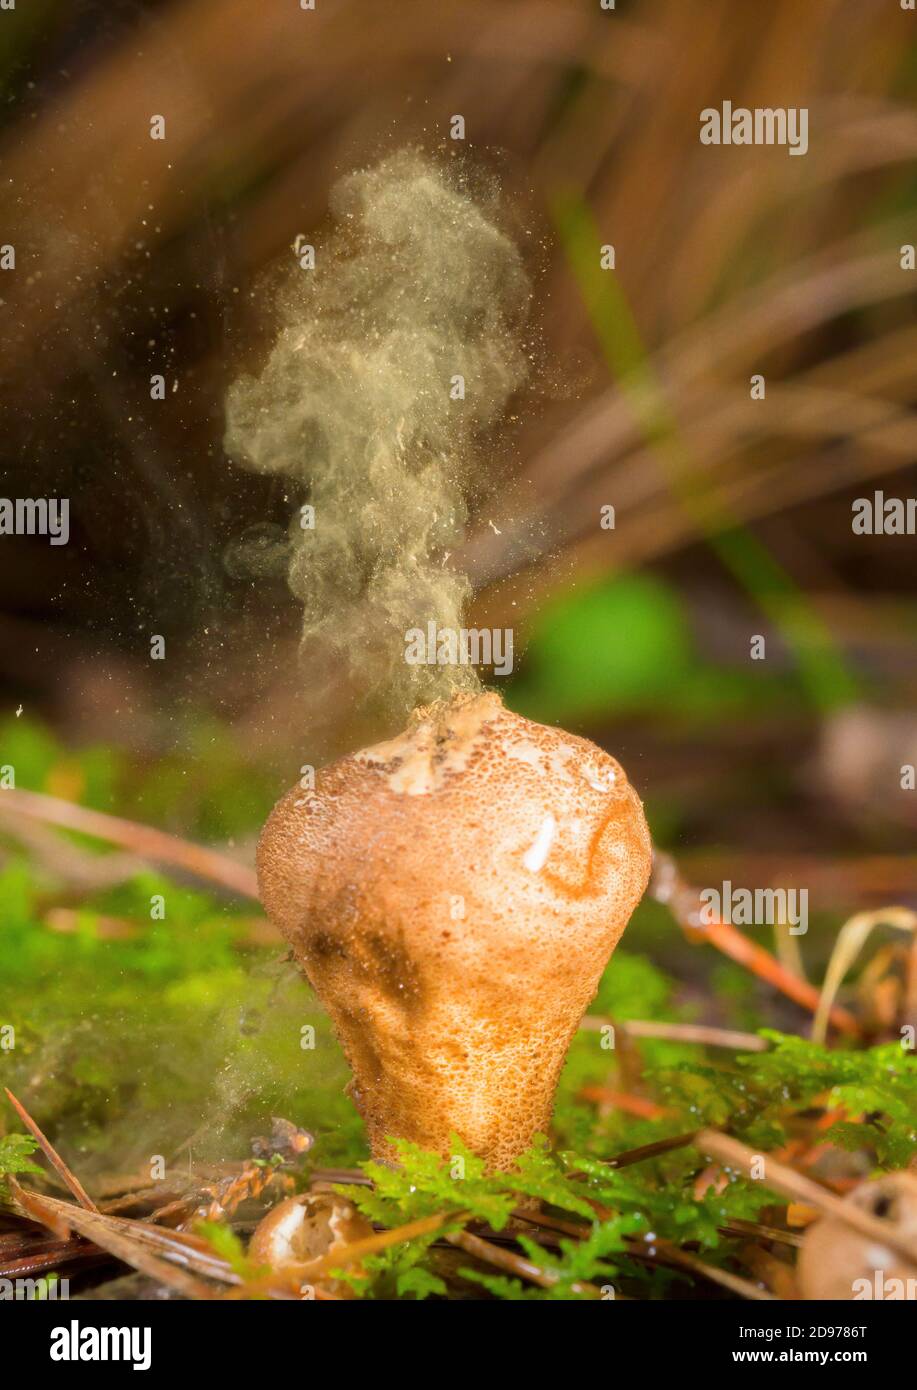 Fungus releasing spores (Lycoperdon umbrinum), highlands of Chiapas, Mexico. Stock Photo